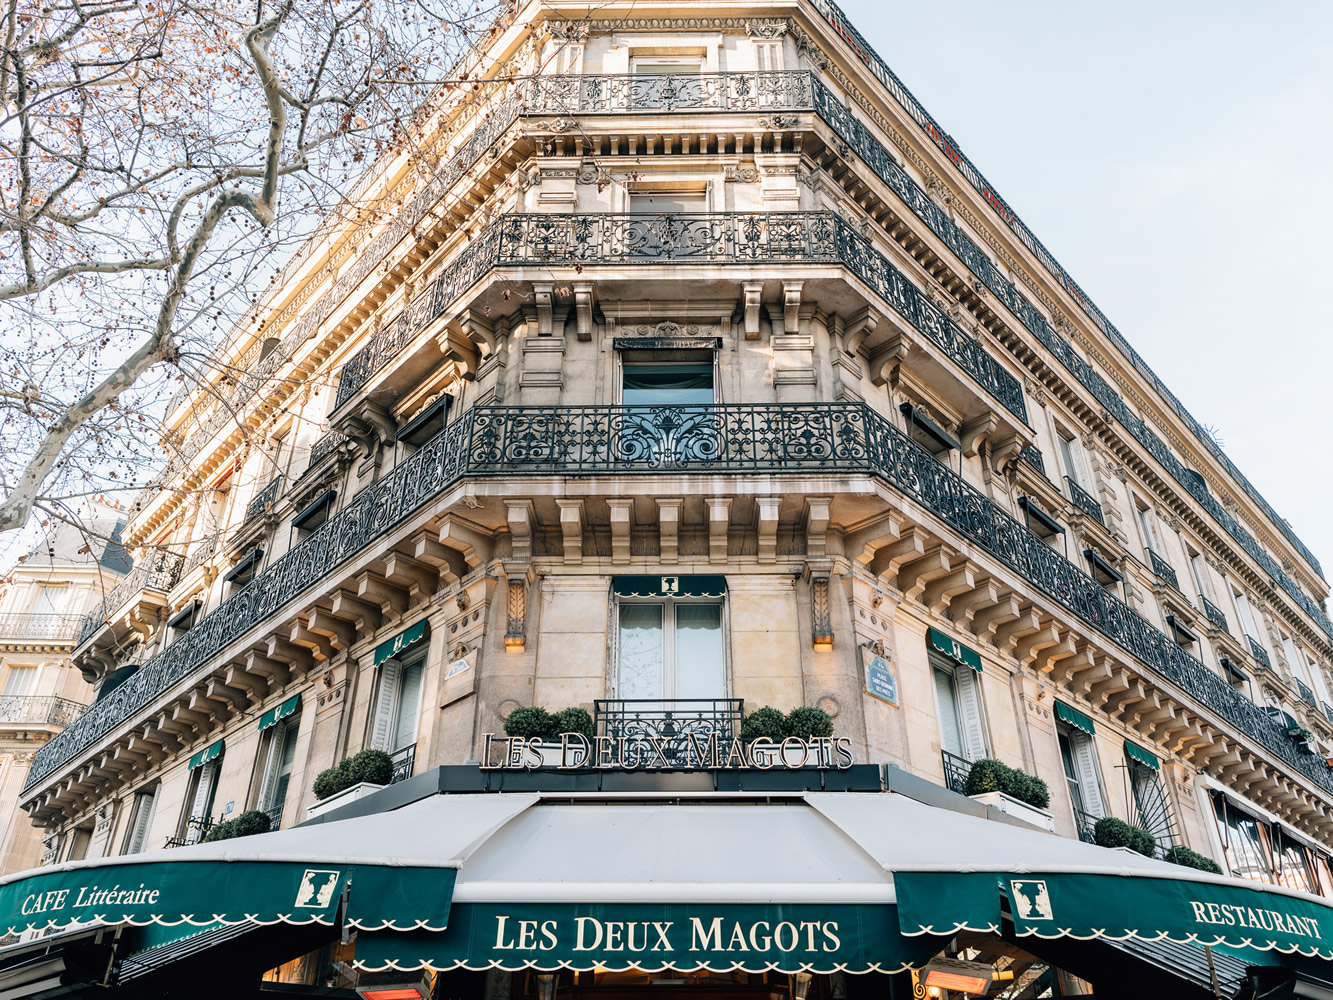 Les Deux Magots in Paris